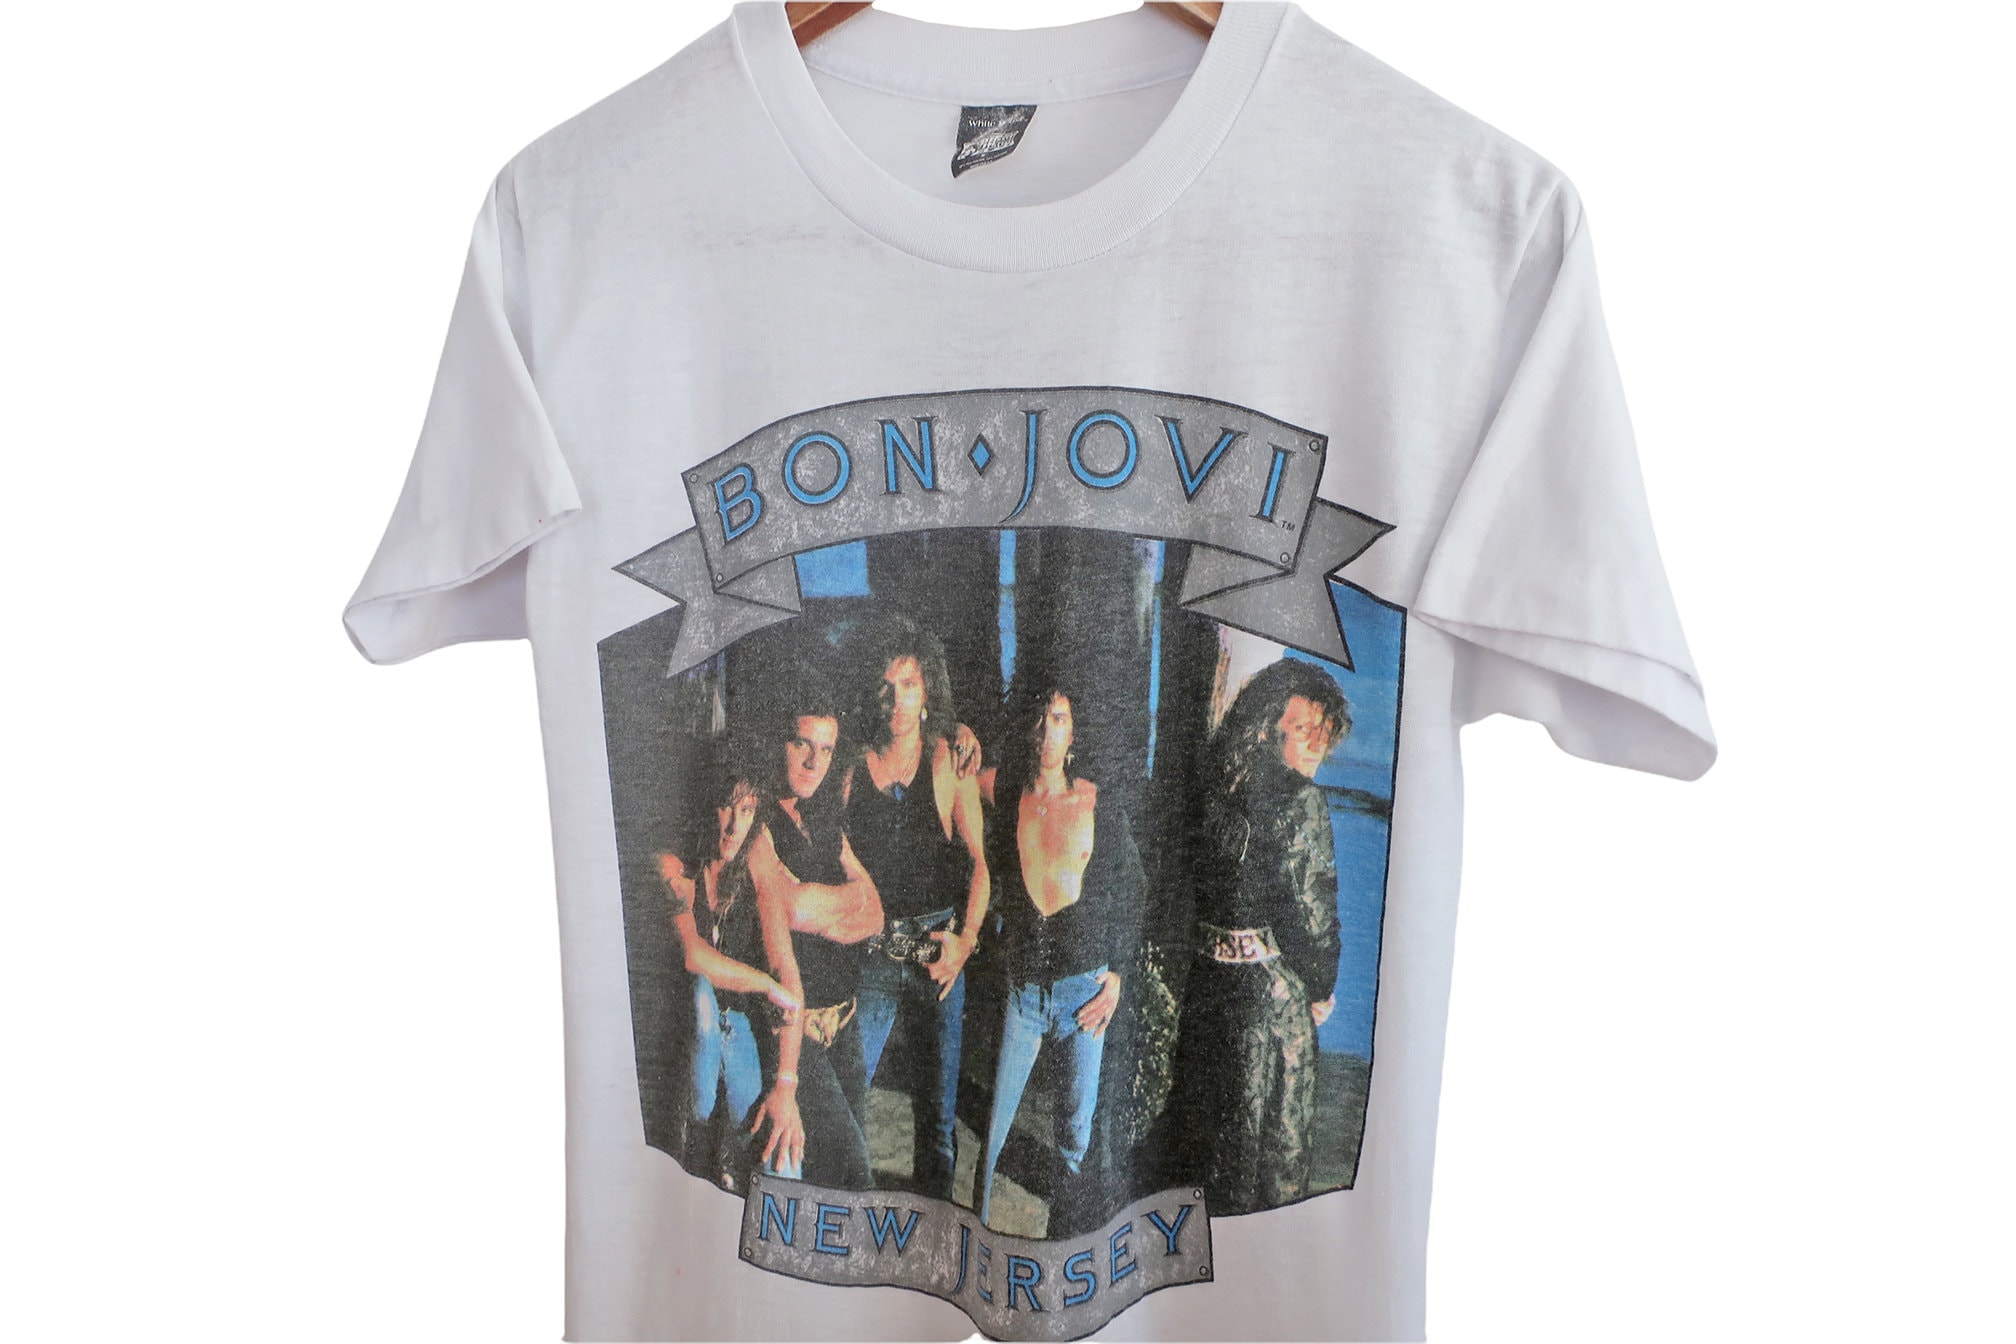 Vintage 80s Bon Jovi T-shirt size Large fits like medium